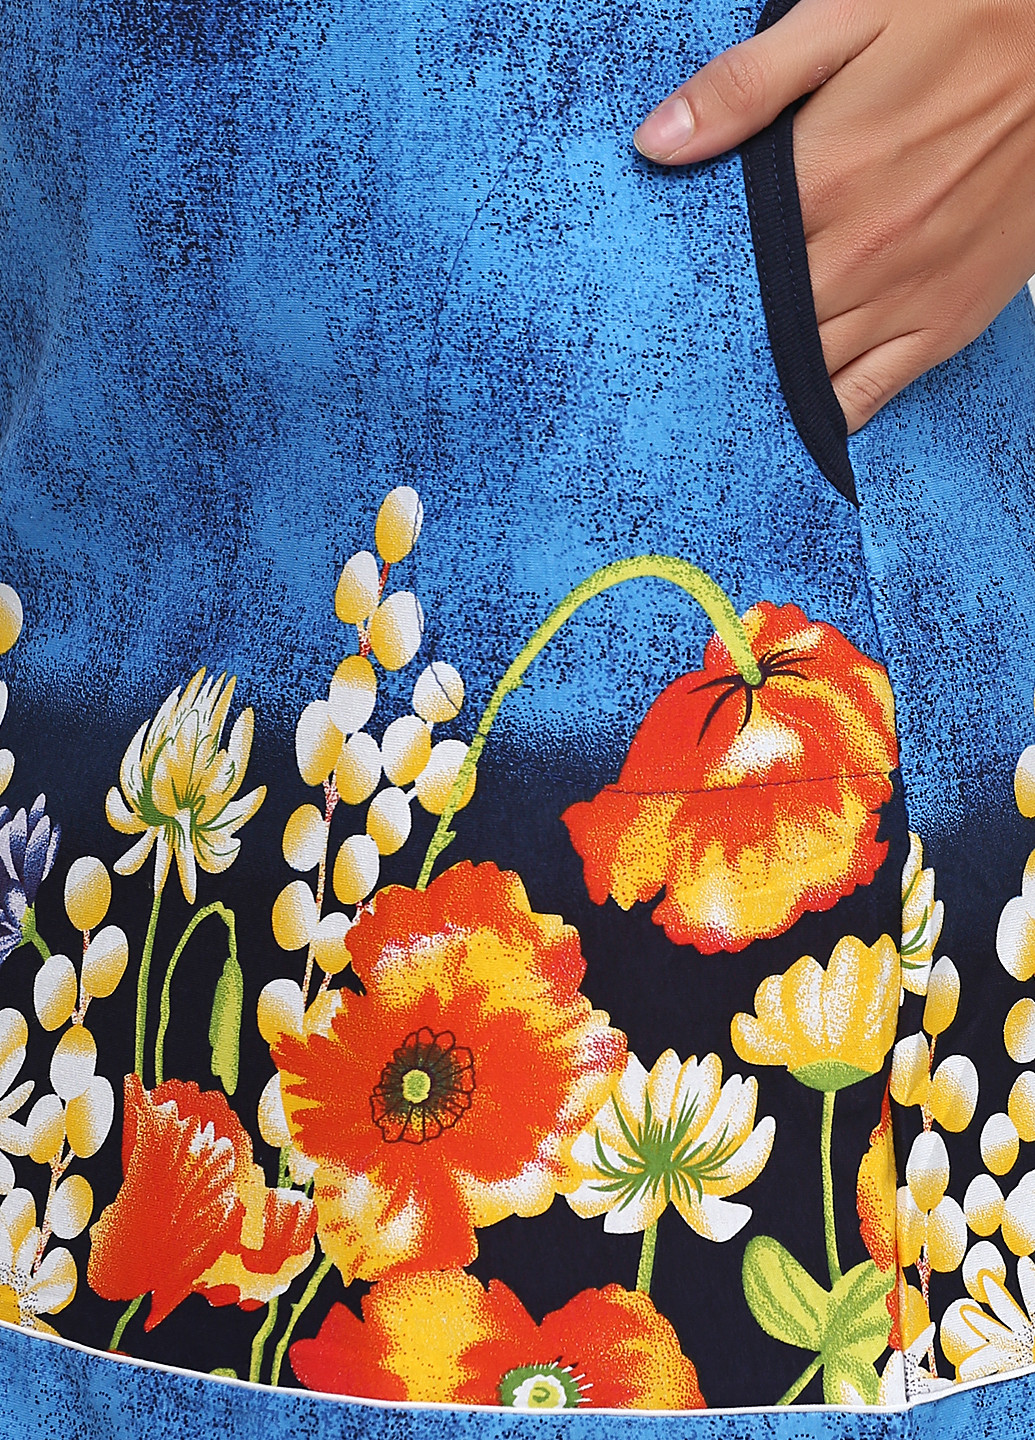 Синя домашній сукня сукня-майка Трикомир з квітковим принтом